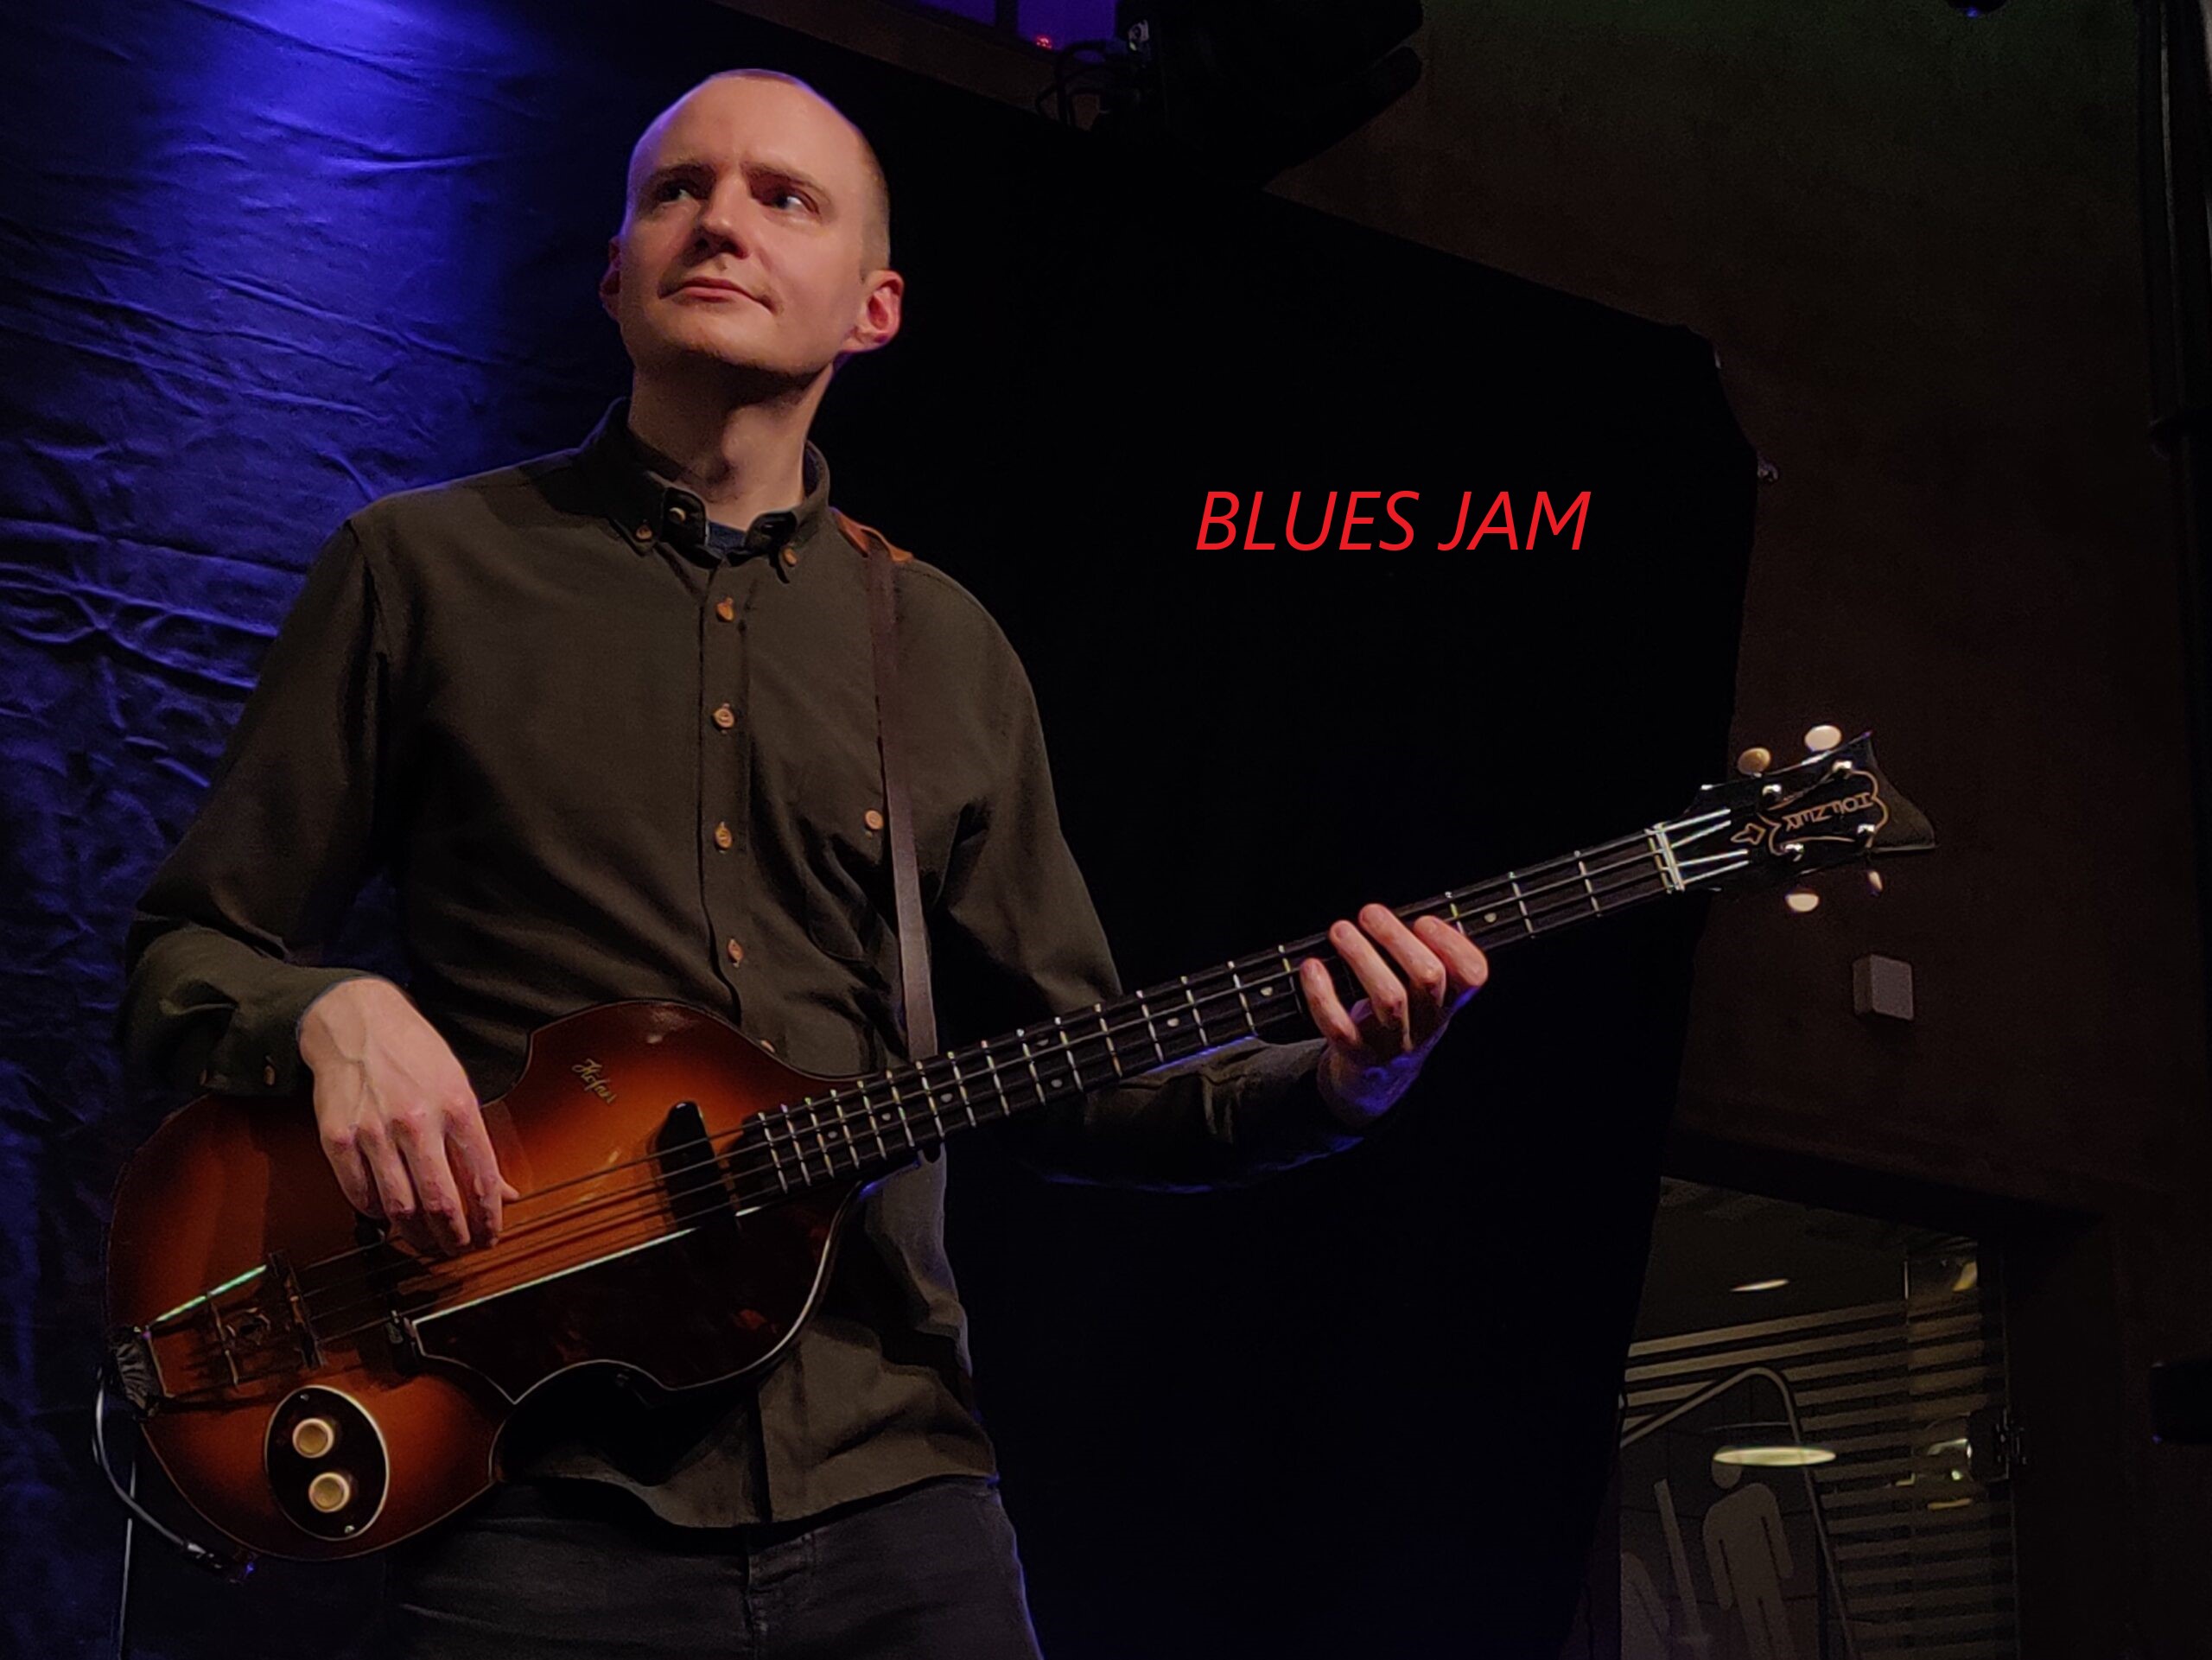 Blues Jam ved 
Laust Krudtmejer.
Feat. Joachim Svensmark og Simon �rregaard